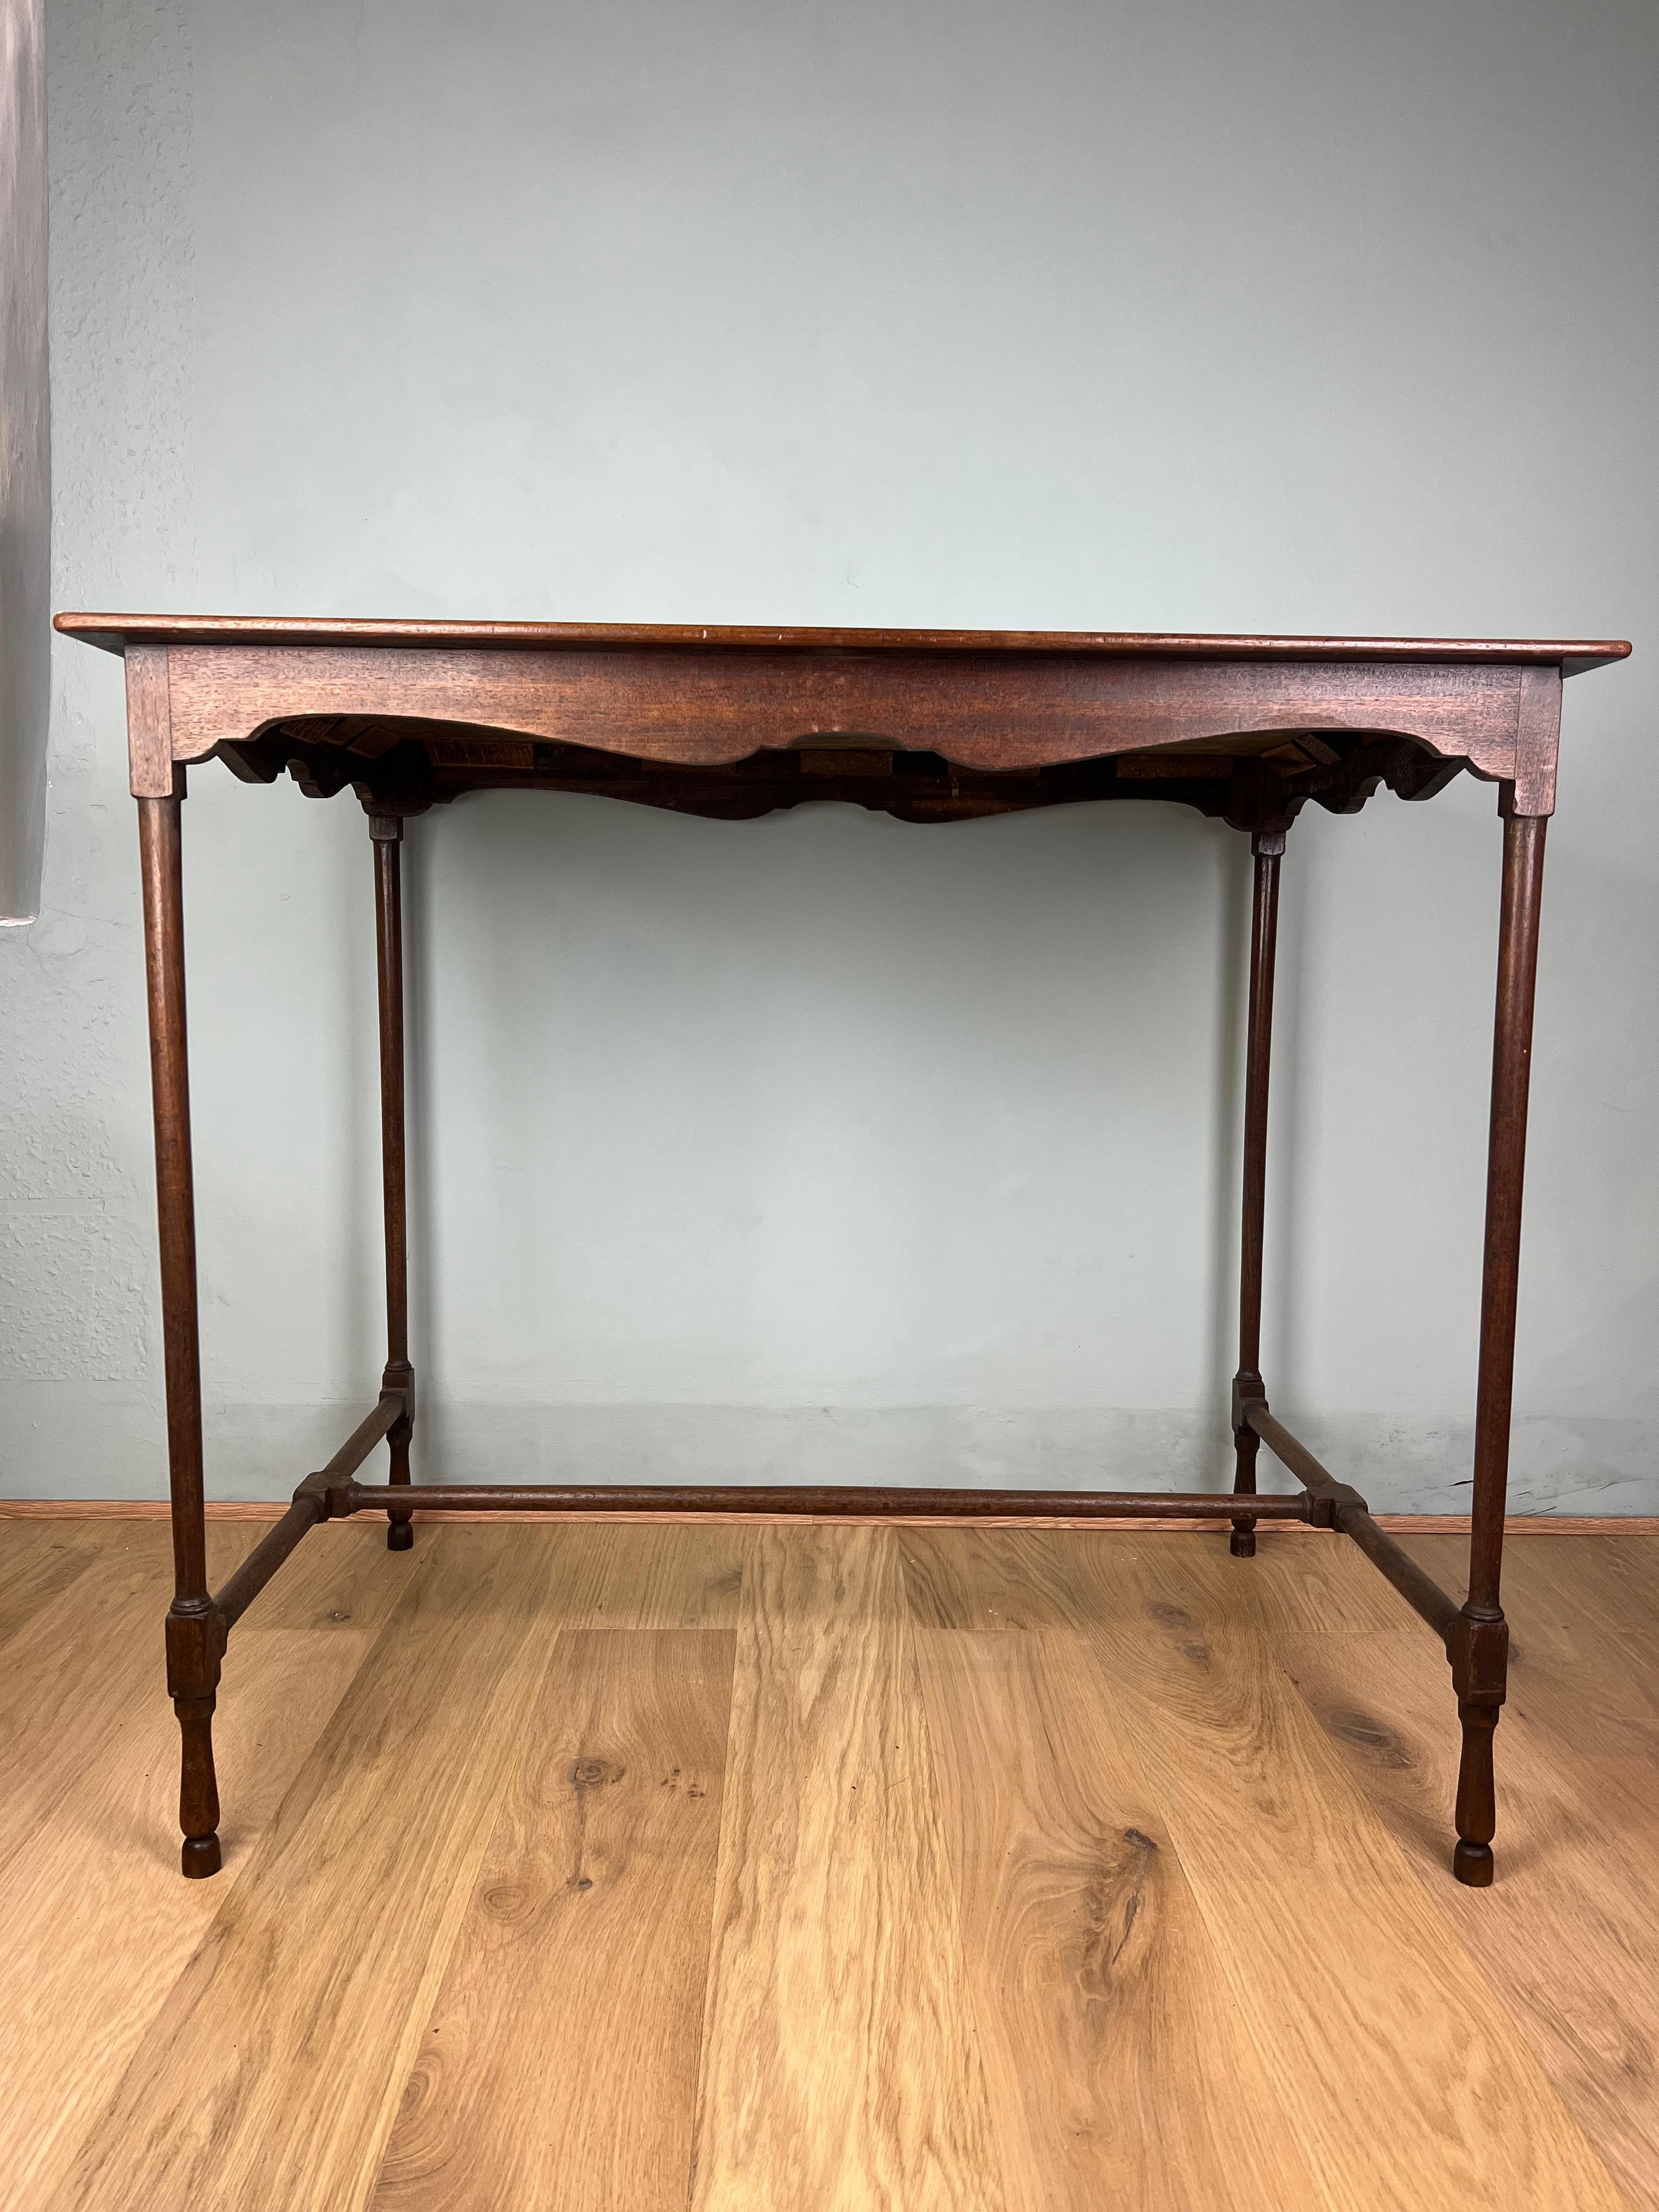 Une très belle et délicate table d'araignée en acajou de George III, de bonne taille.
Le fin plateau d'acajou est d'une seule pièce, il est intact et présente une couleur et une patine merveilleuses. Sous le plateau se trouve une frise de forme